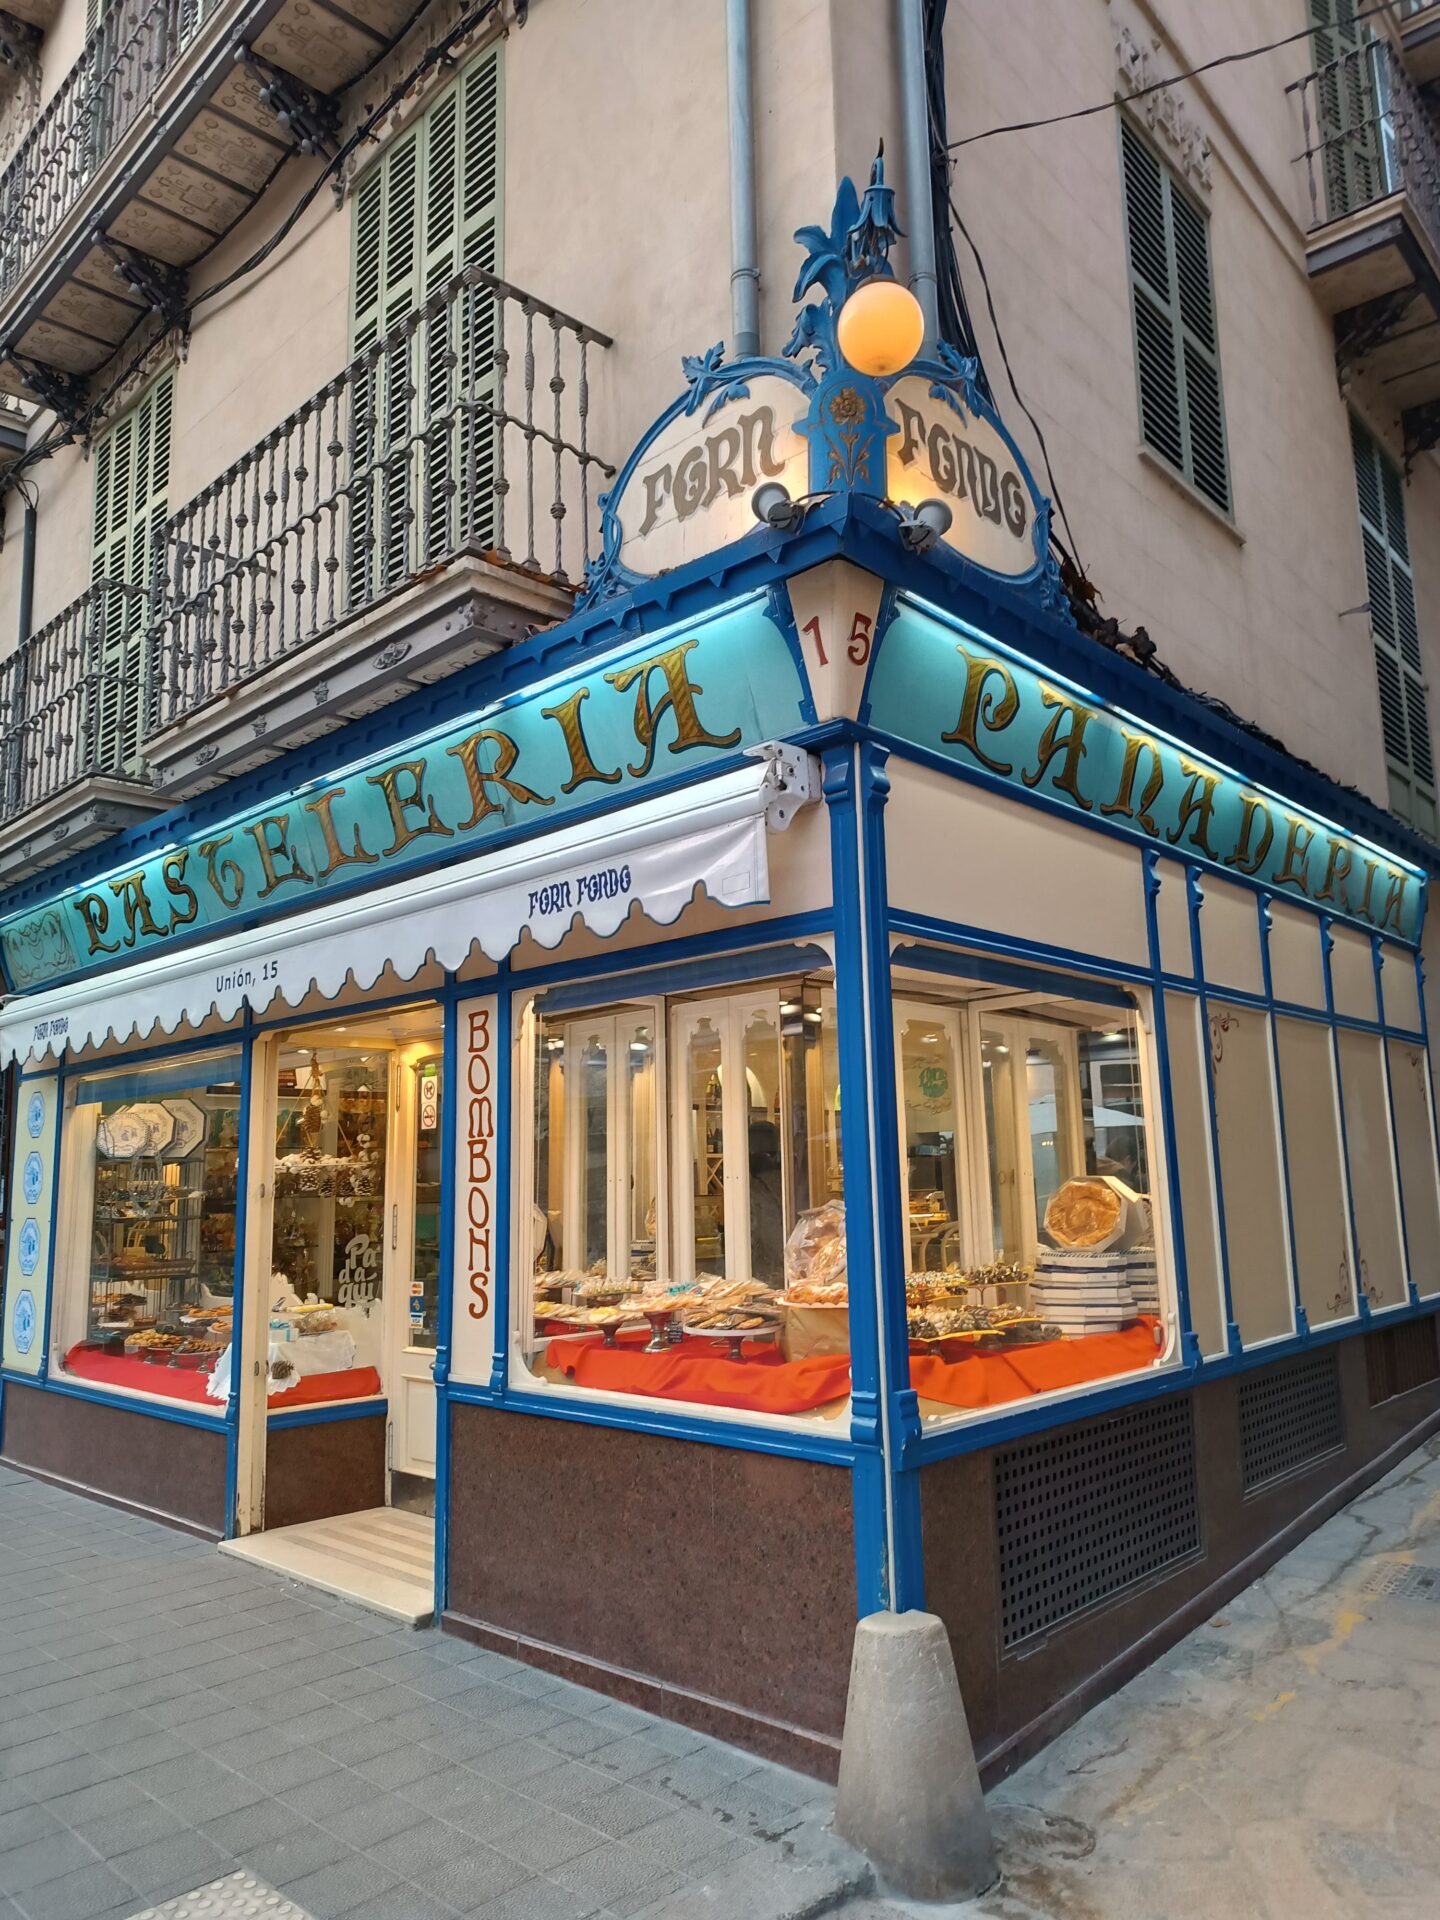 Pastelería de ensaimadas en Palma